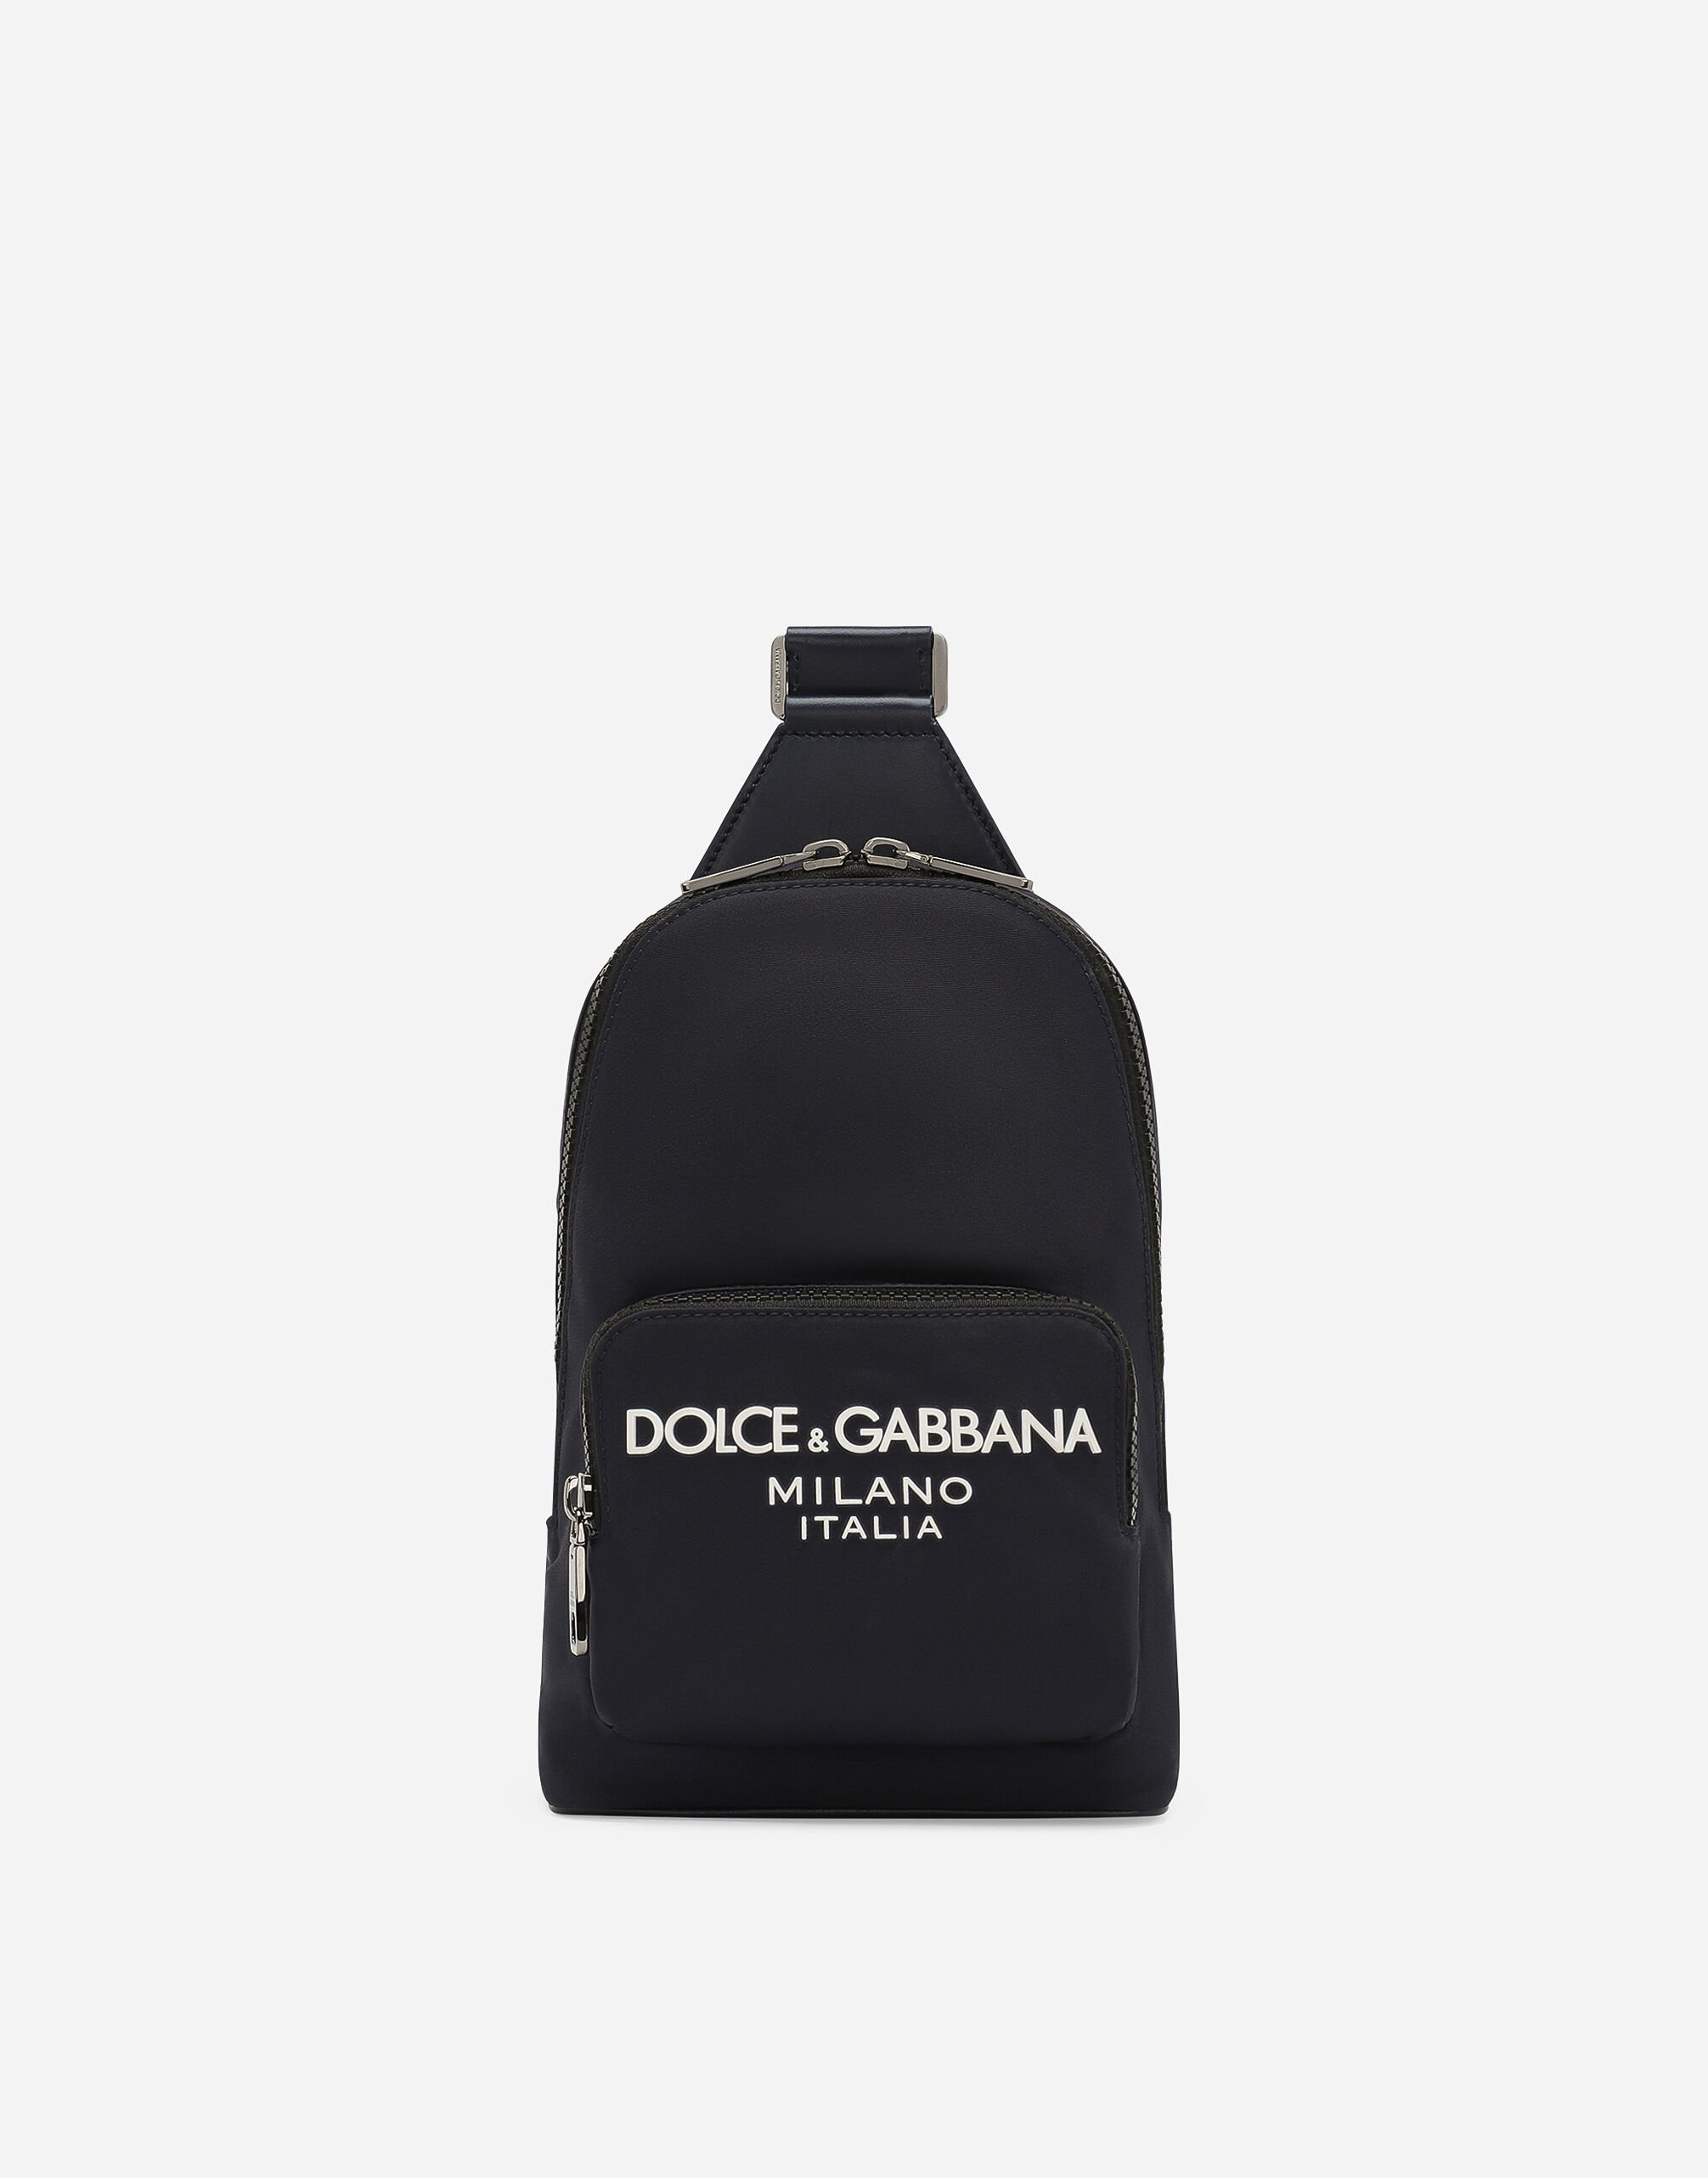 Dolce & Gabbana UmhÃ¤ngerucksack aus Nylon Drucken BM2259AQ061